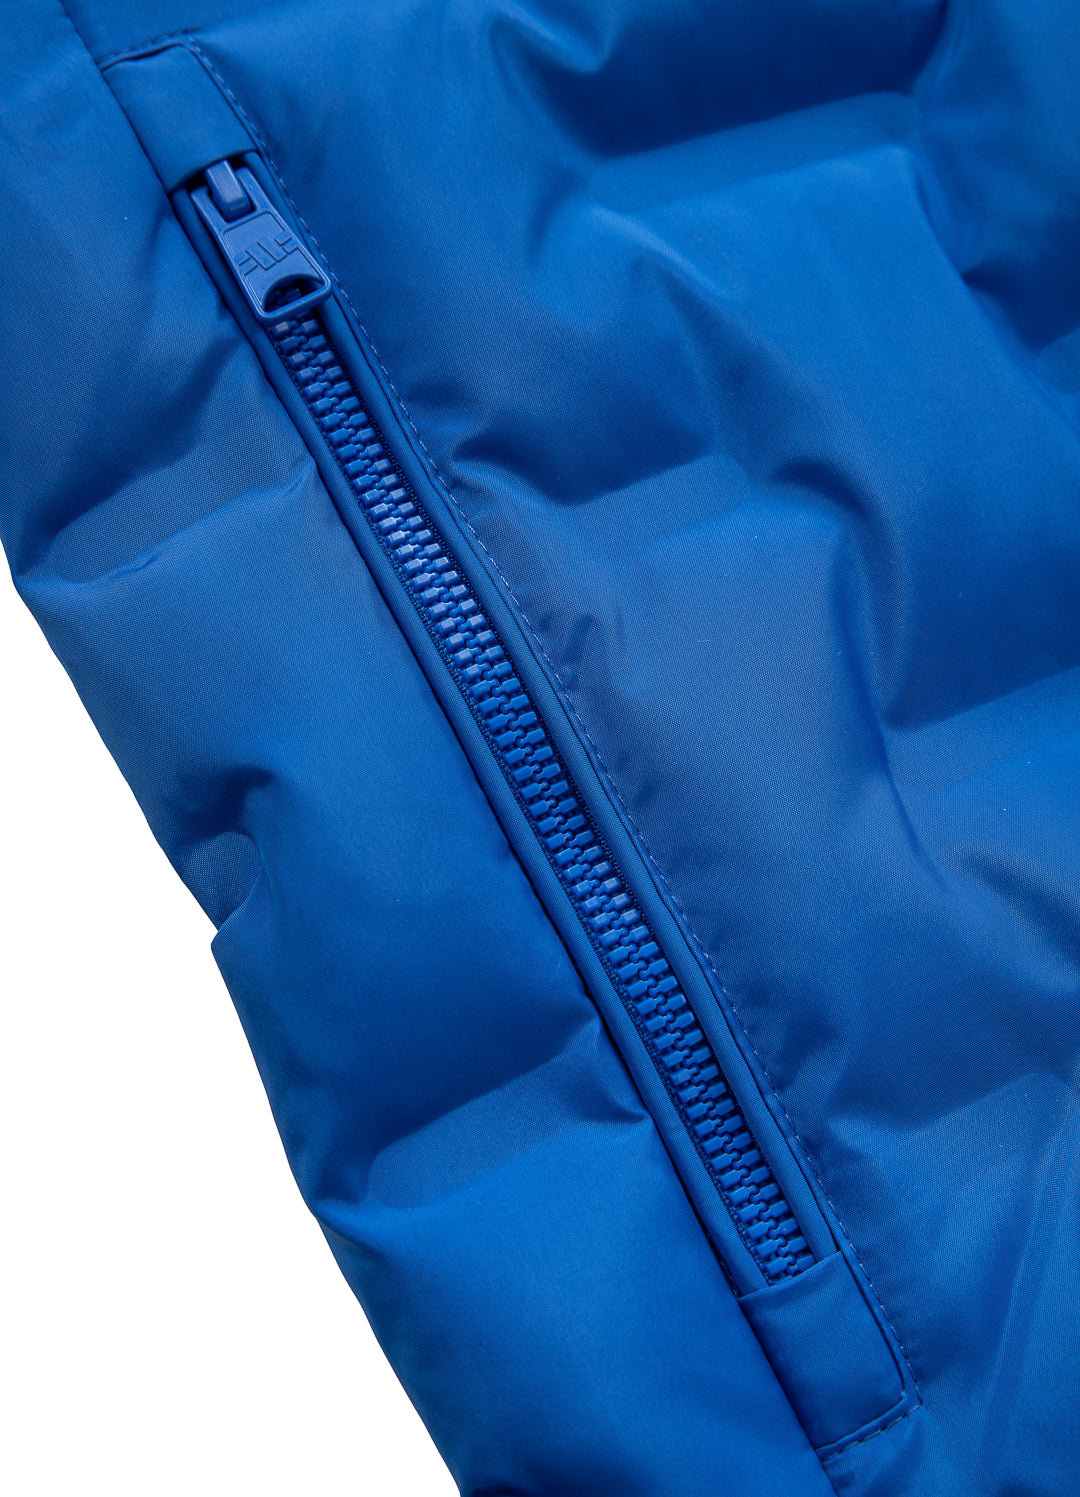 FIRESTONE Blue Jacket.